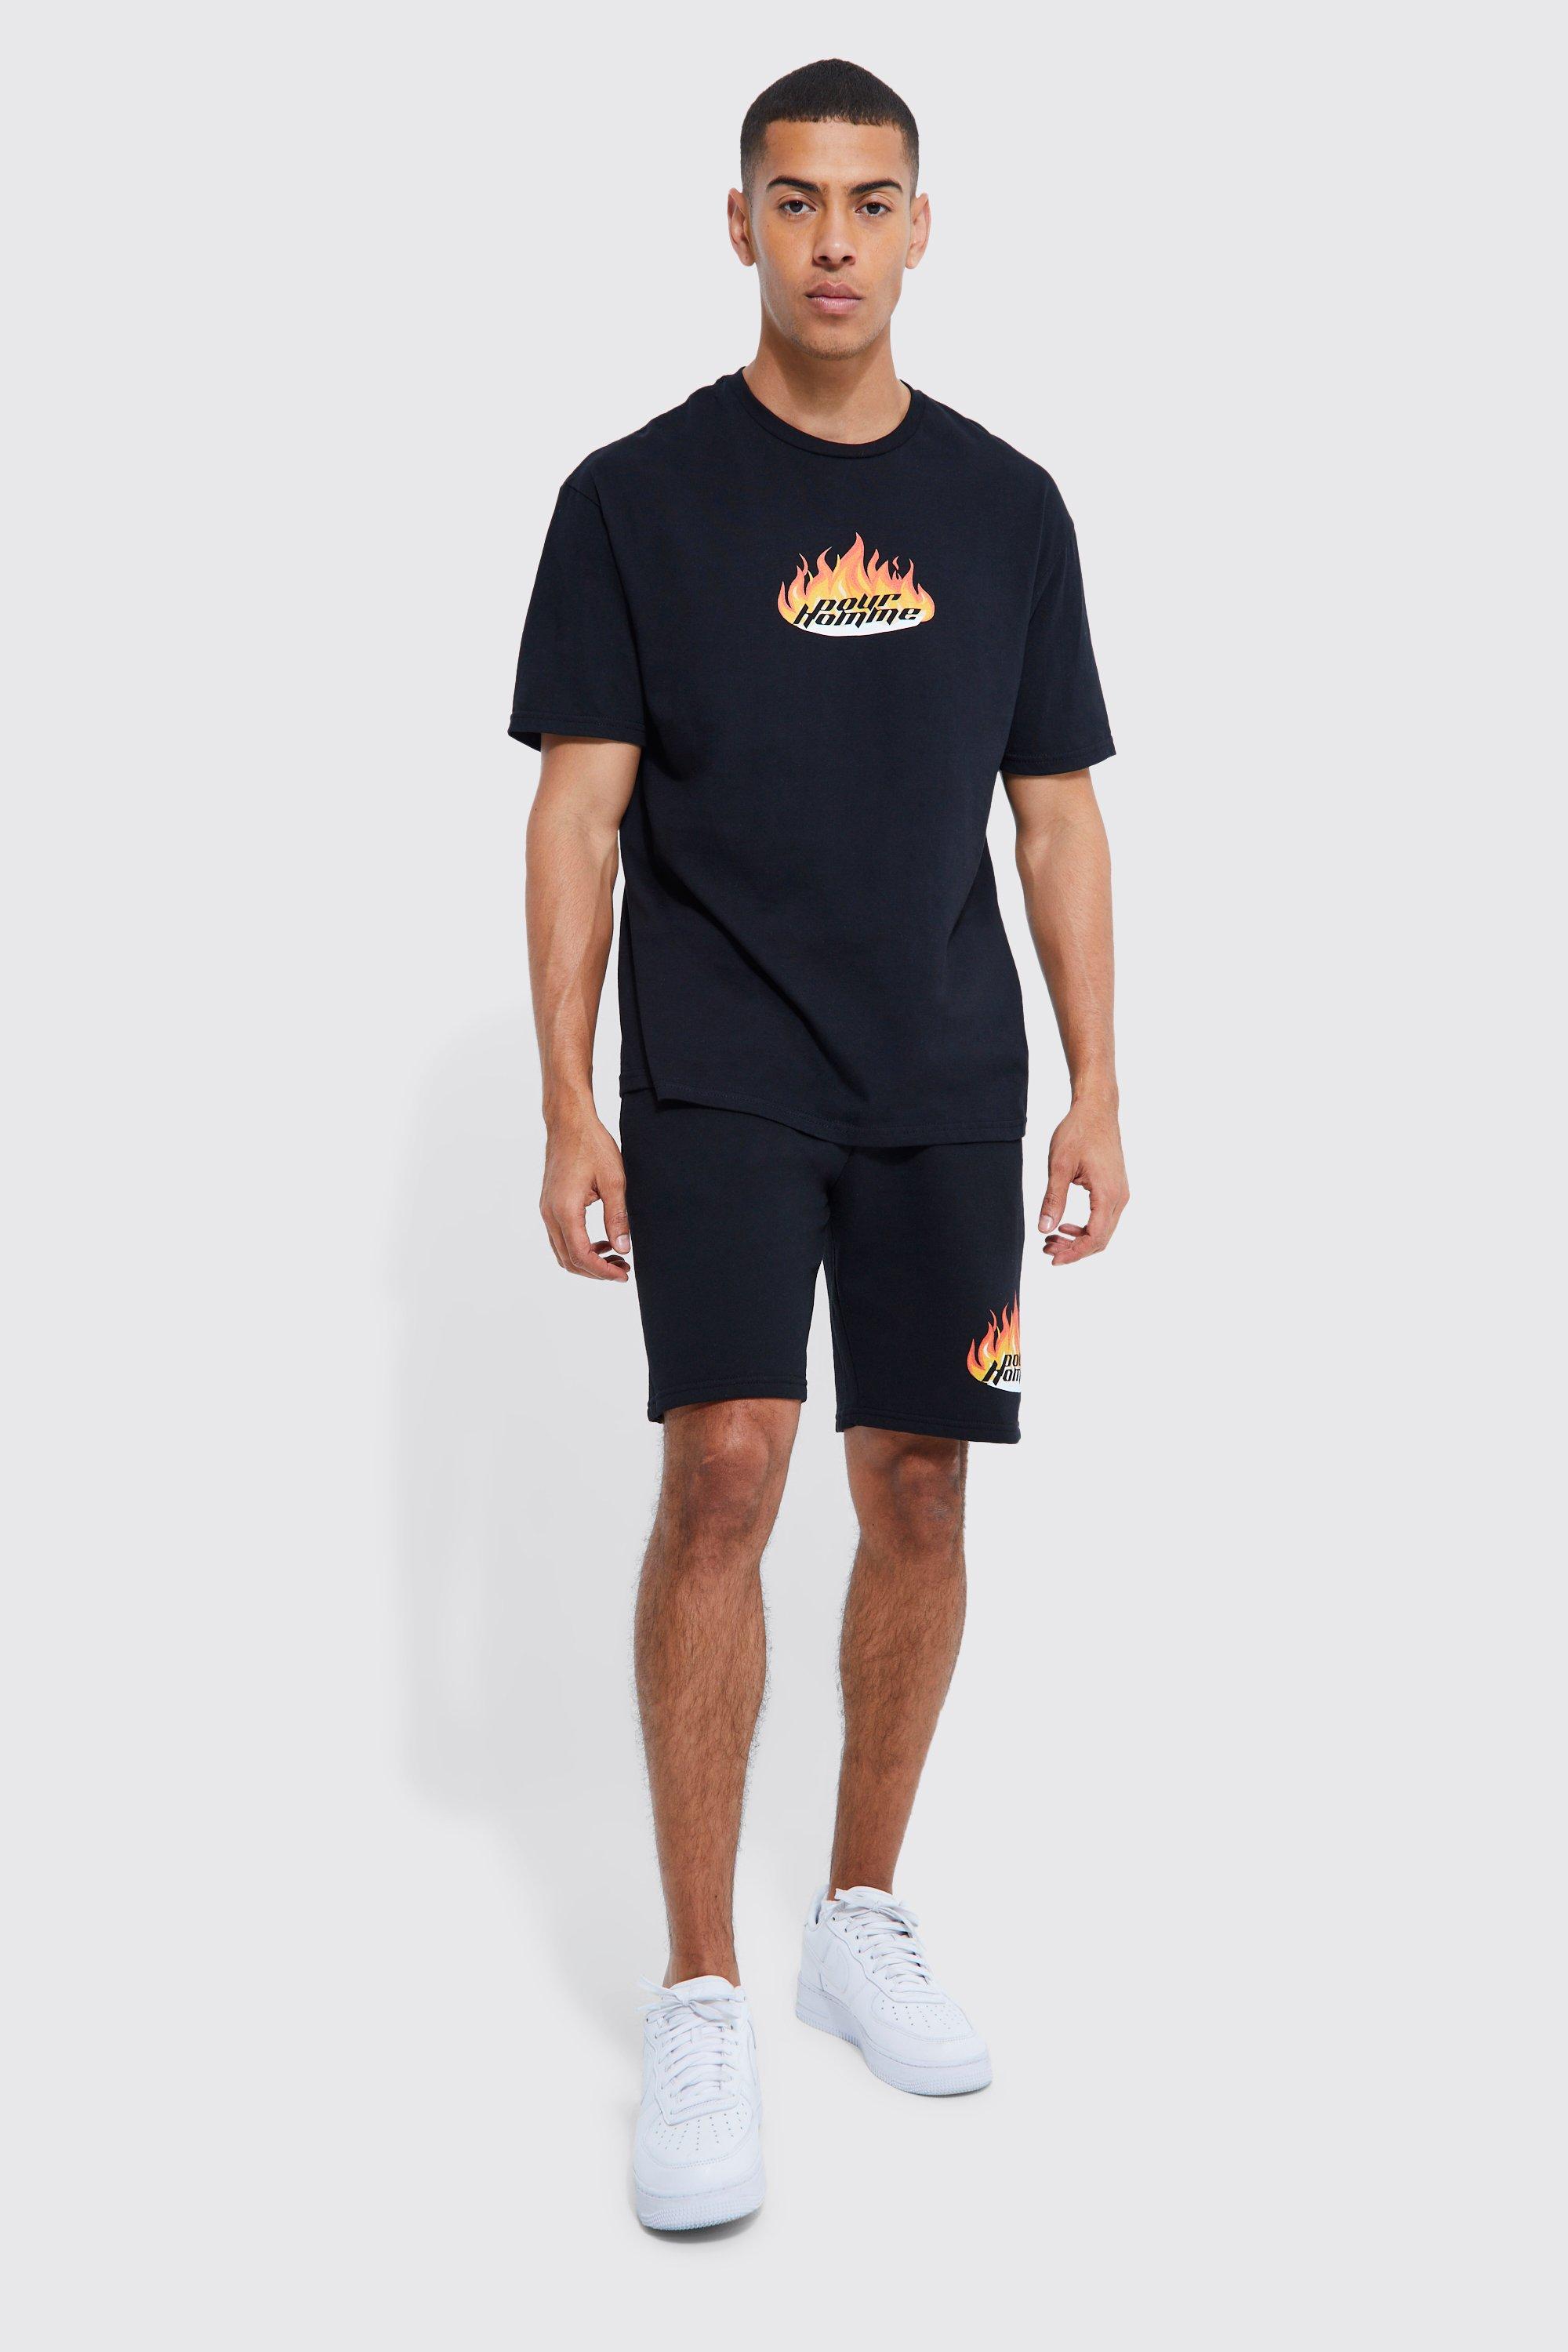 Mens Black Oversized Pour Homme Flames T-shirt Set, Black